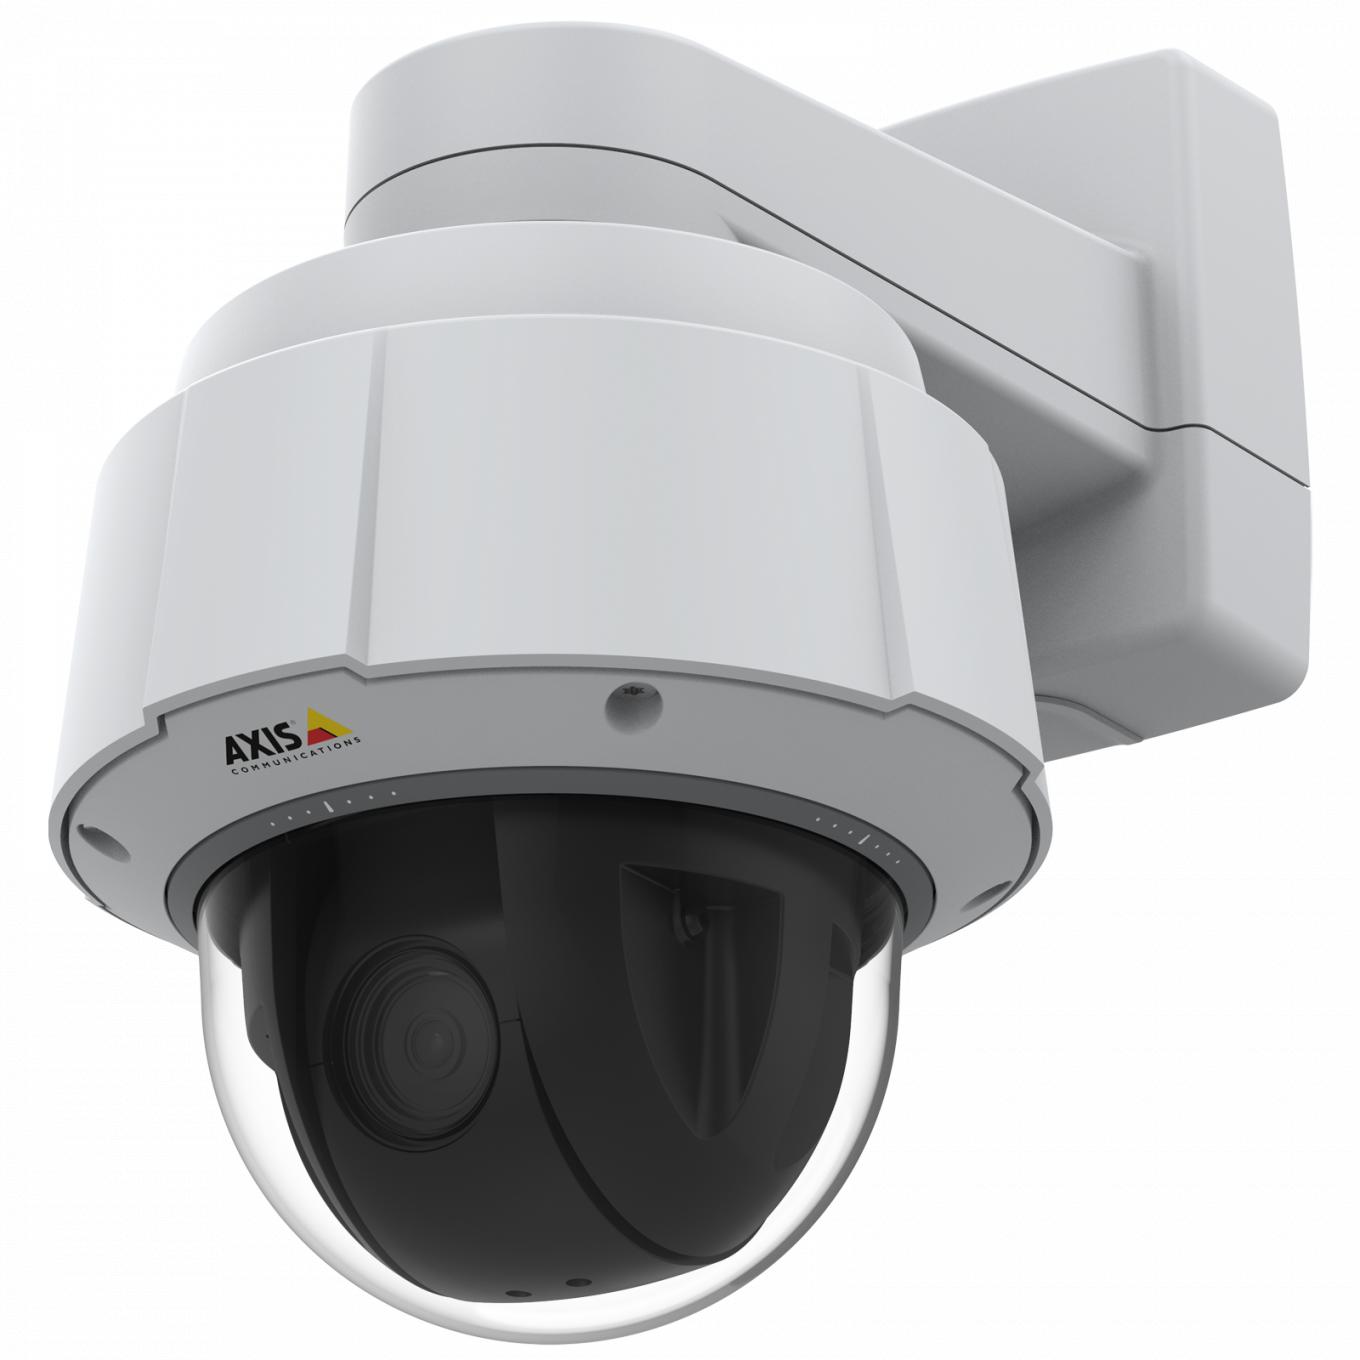 A câmera IP AXIS Q6075-E possui TPM com certificação FIPS 140-2 nível 2